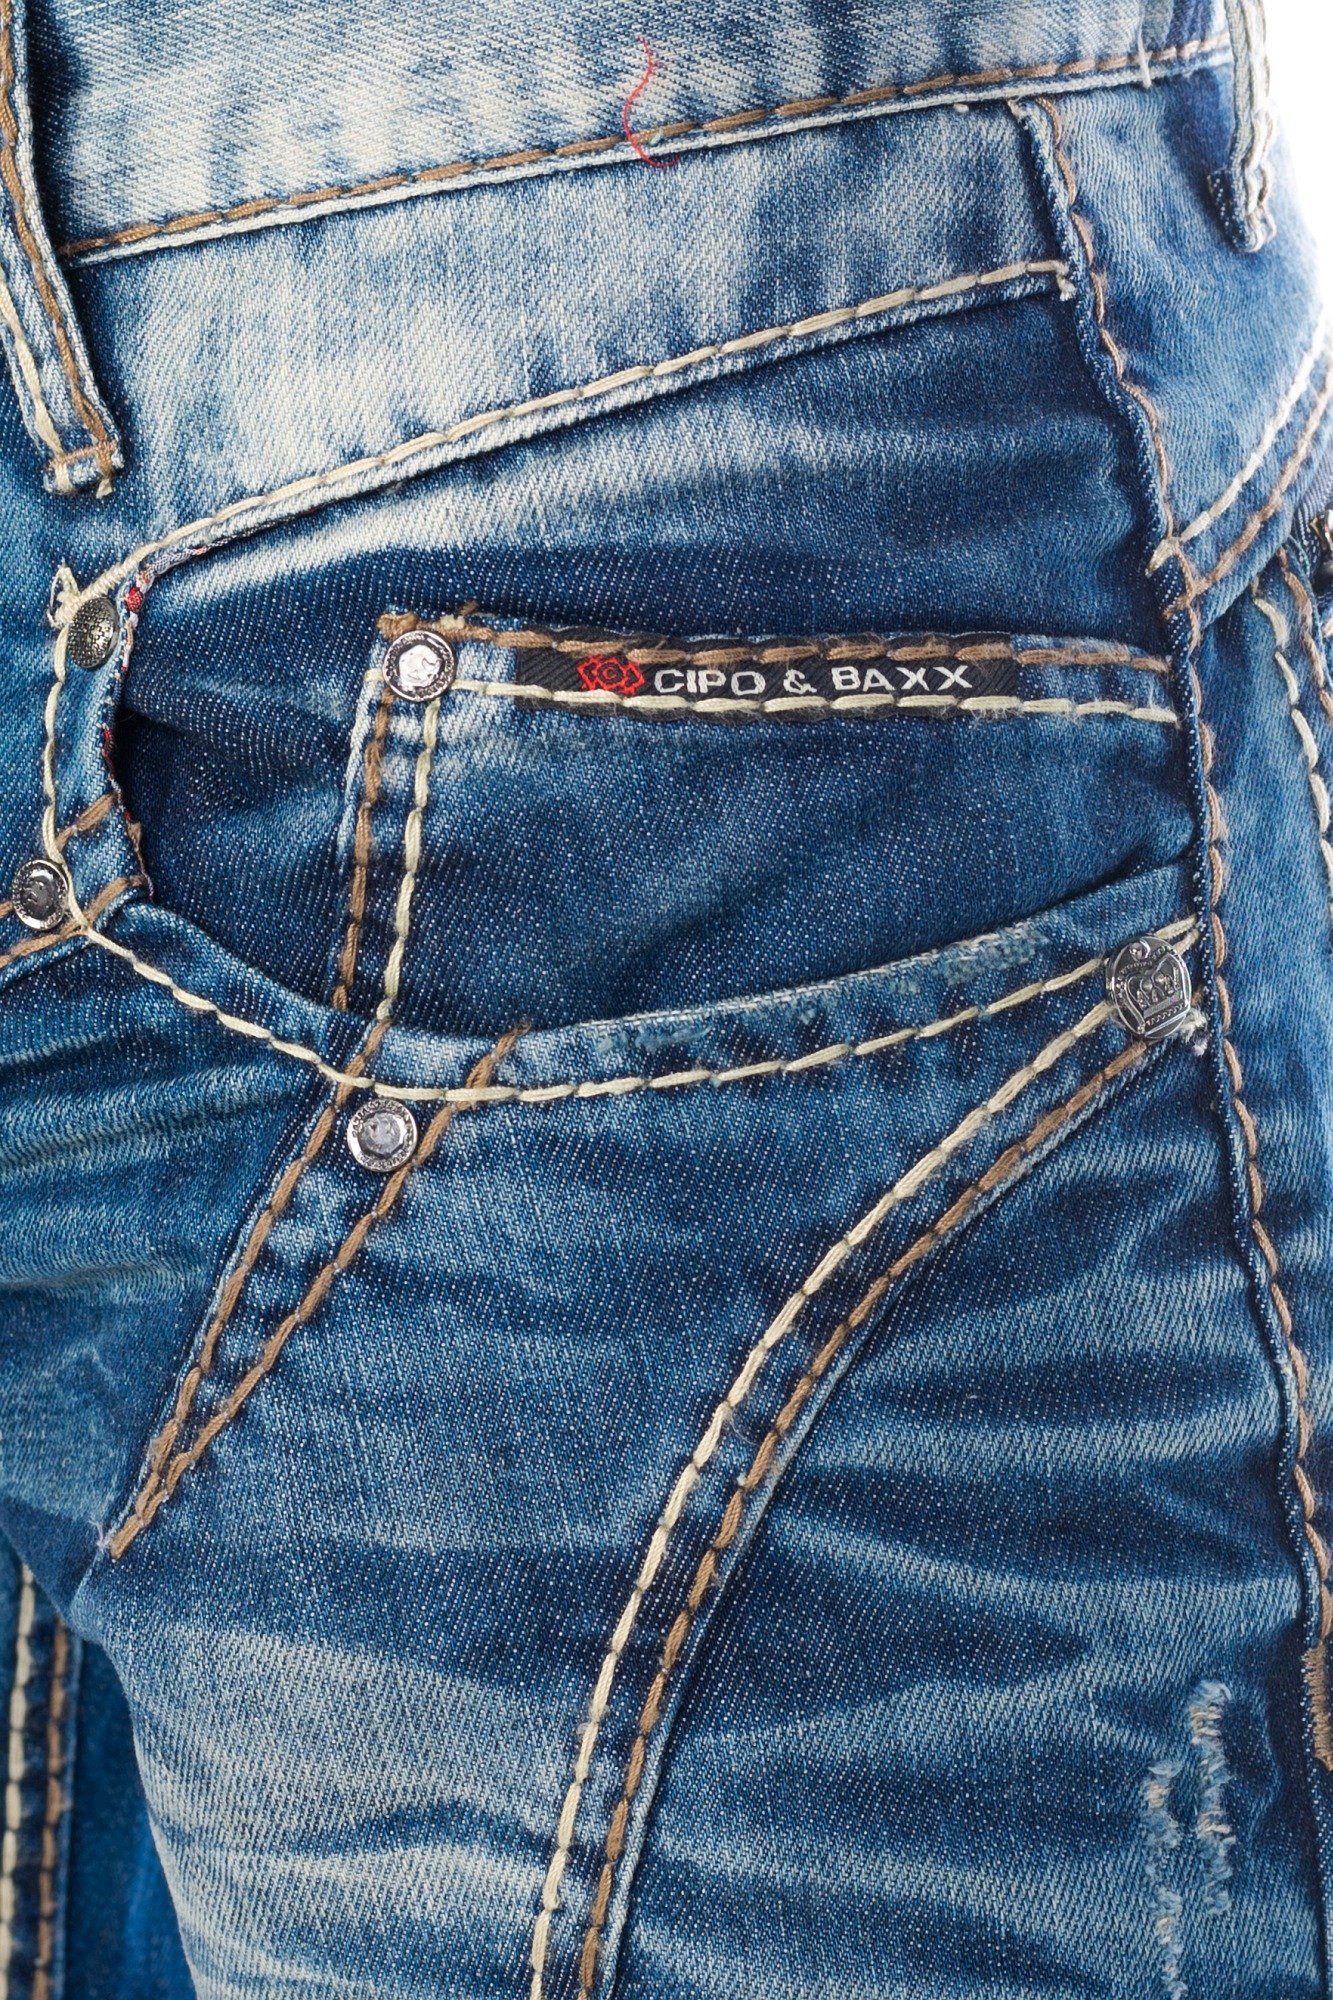 Hose Regular-fit-Jeans Nahtstruktur stylischer Cipo Baxx Waschung Jeanshose und aufwendiger Nahtverzierung Herren ausgefallener mit mit & Jeans